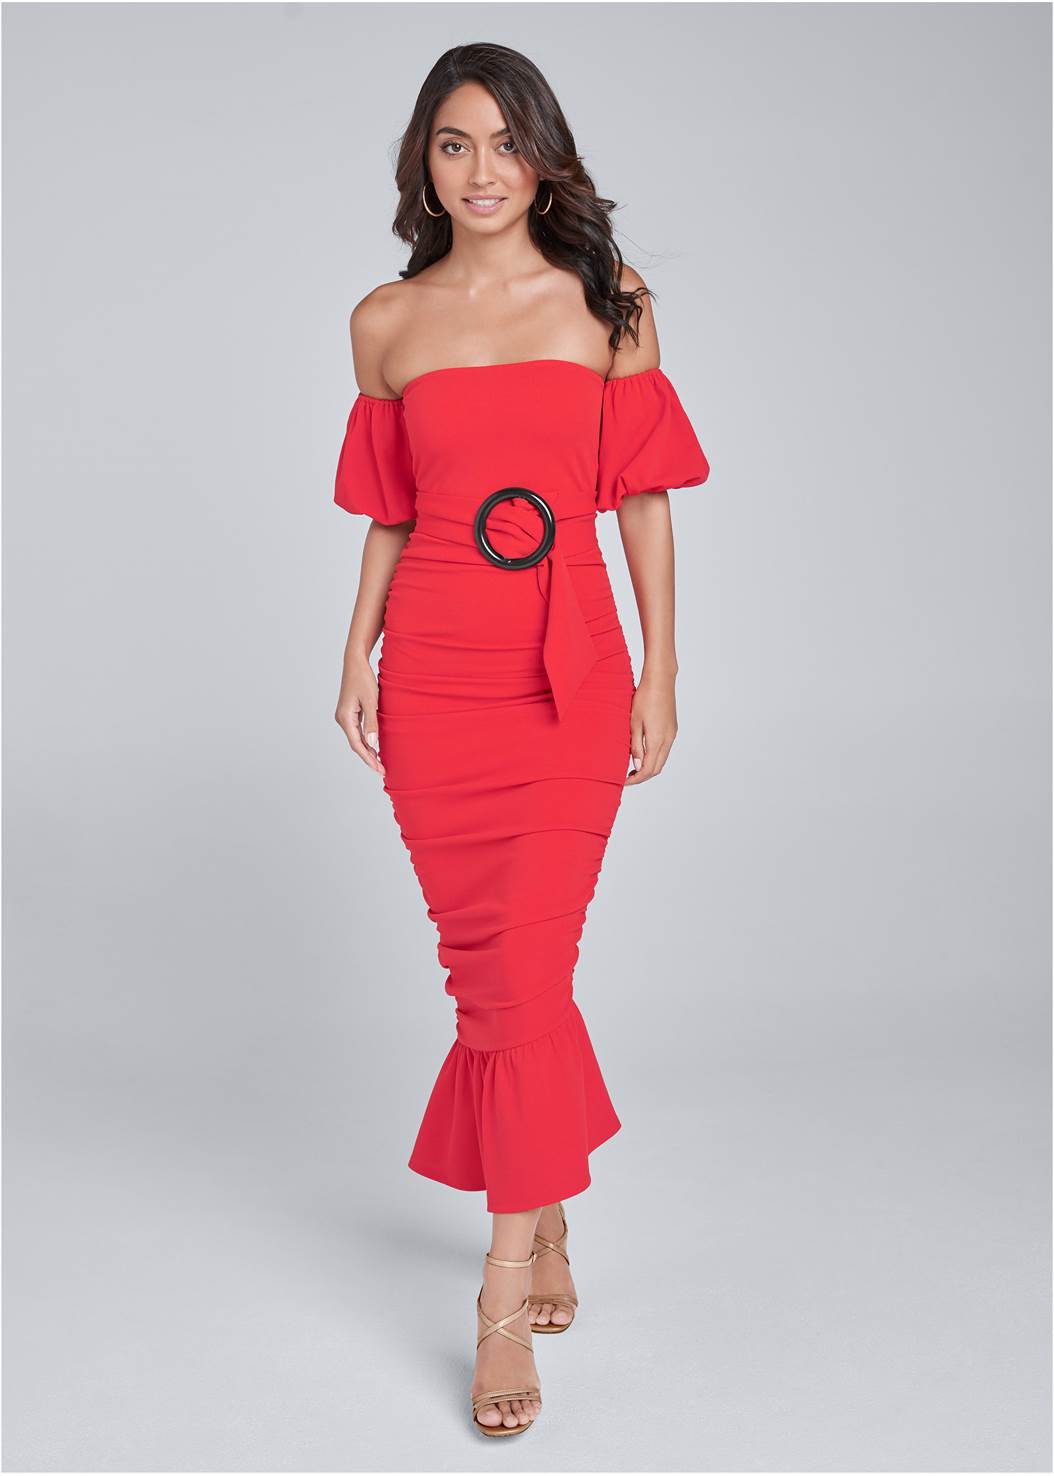 Off Shoulder Ruched Dress in Red | VENUS